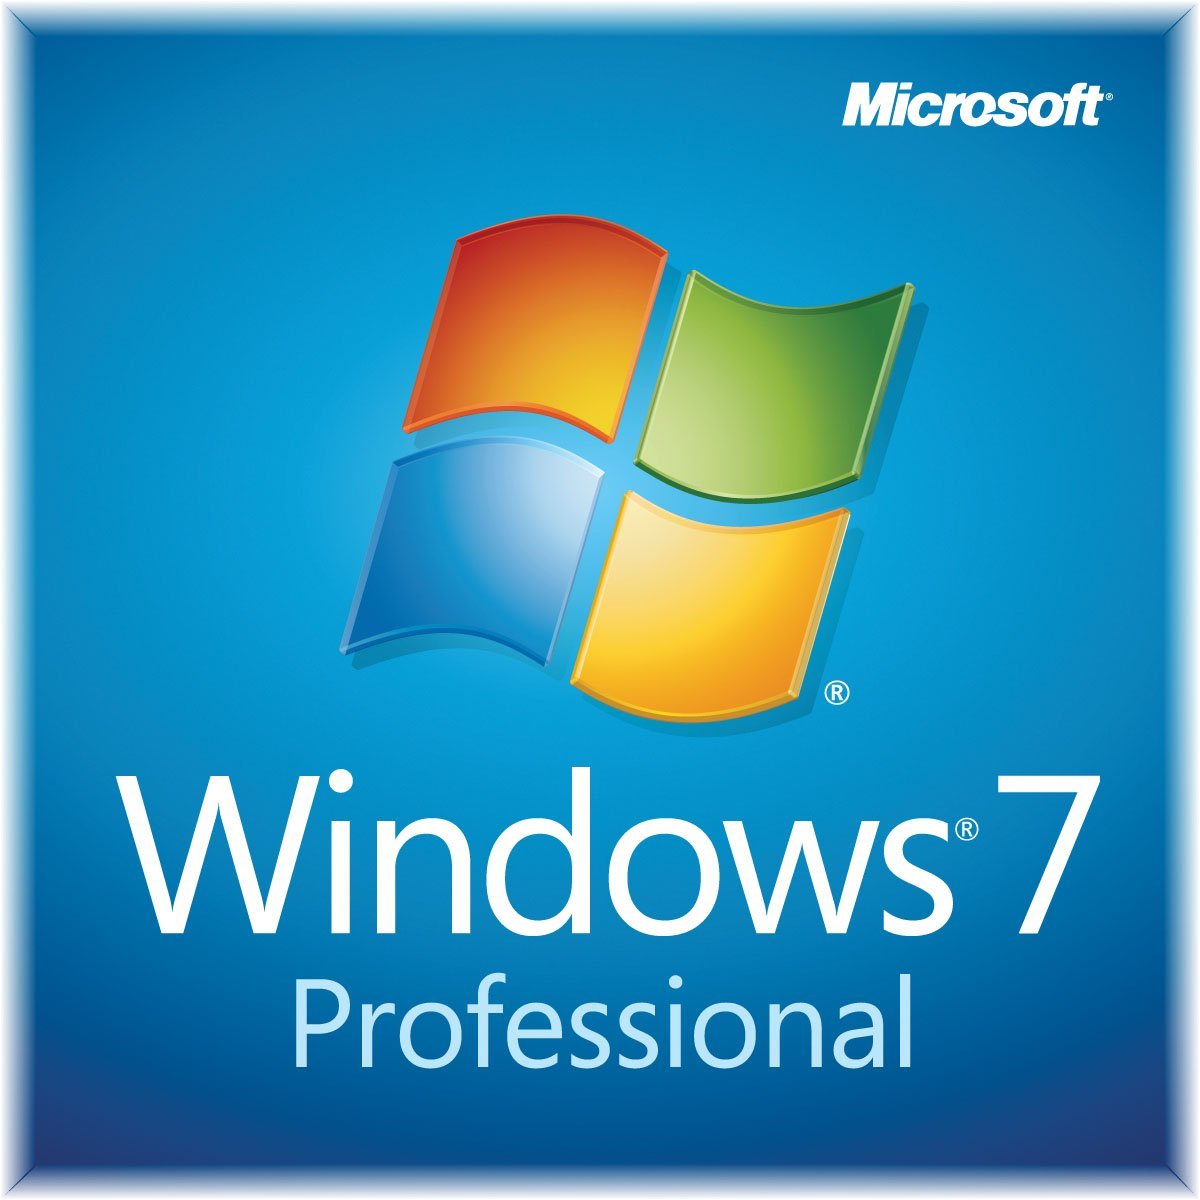 Windows 7 ultimate 64 bit iso download utorrent